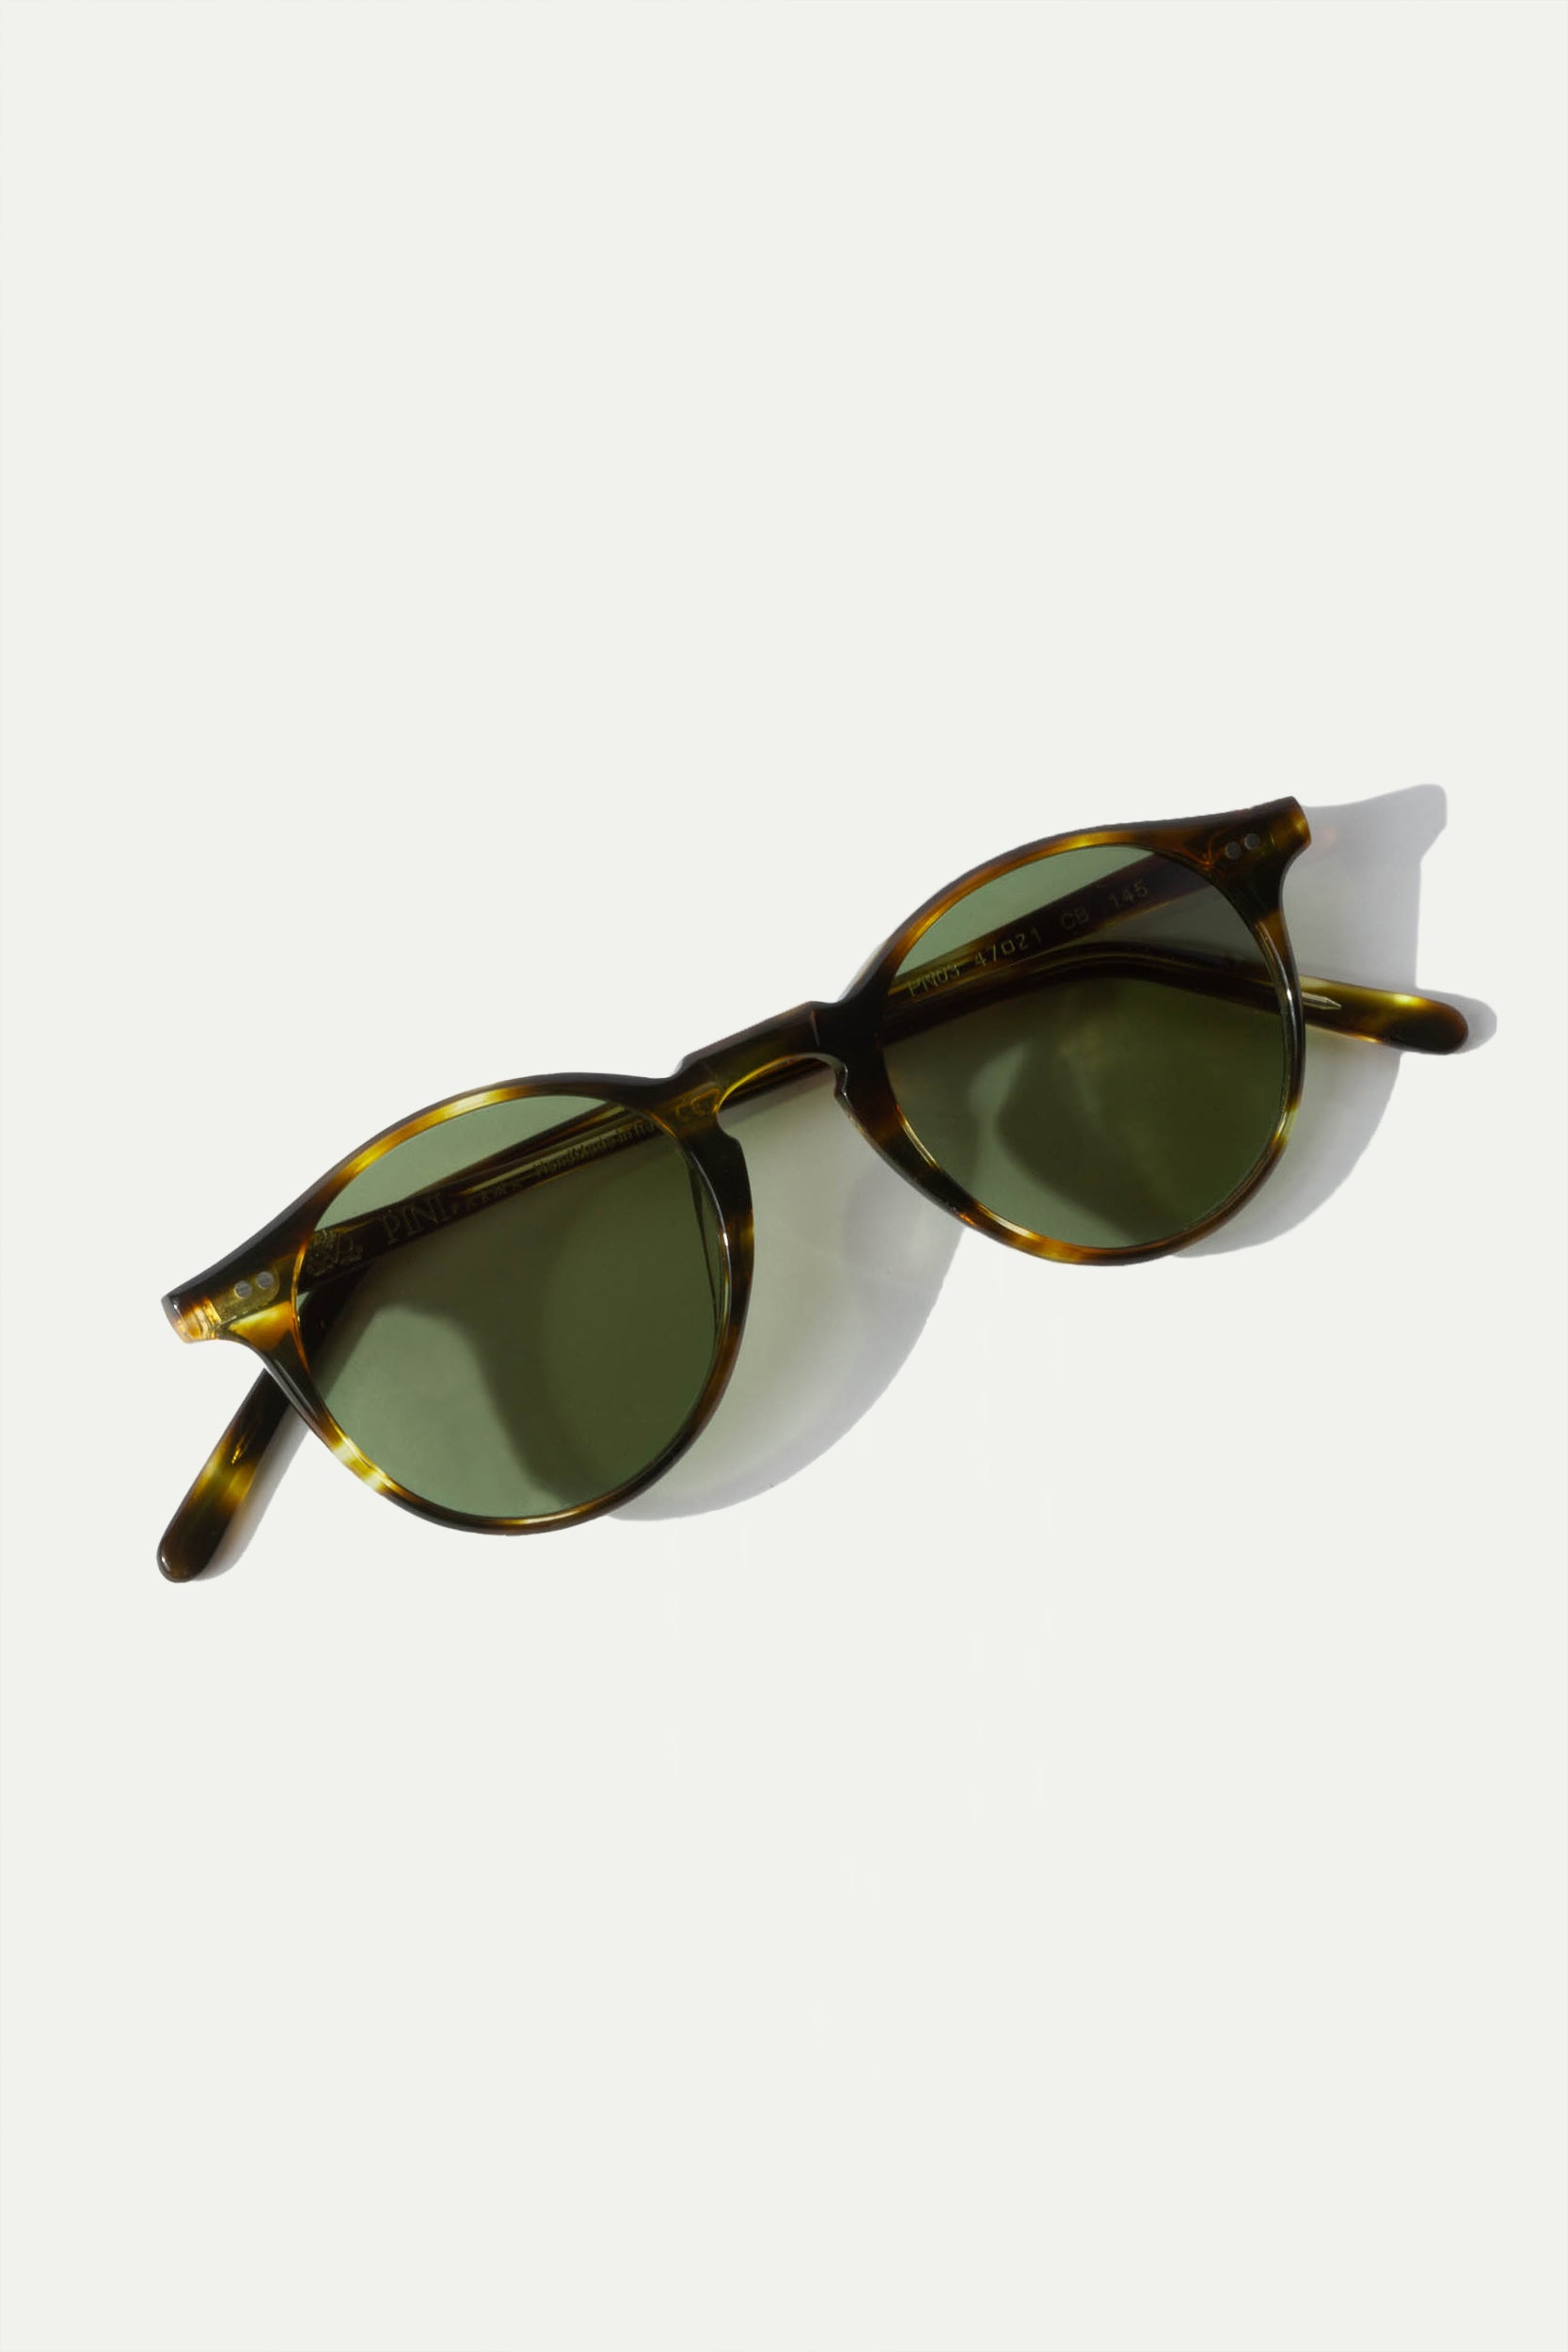 Turtle sunglasses Portofino - Made in Italy